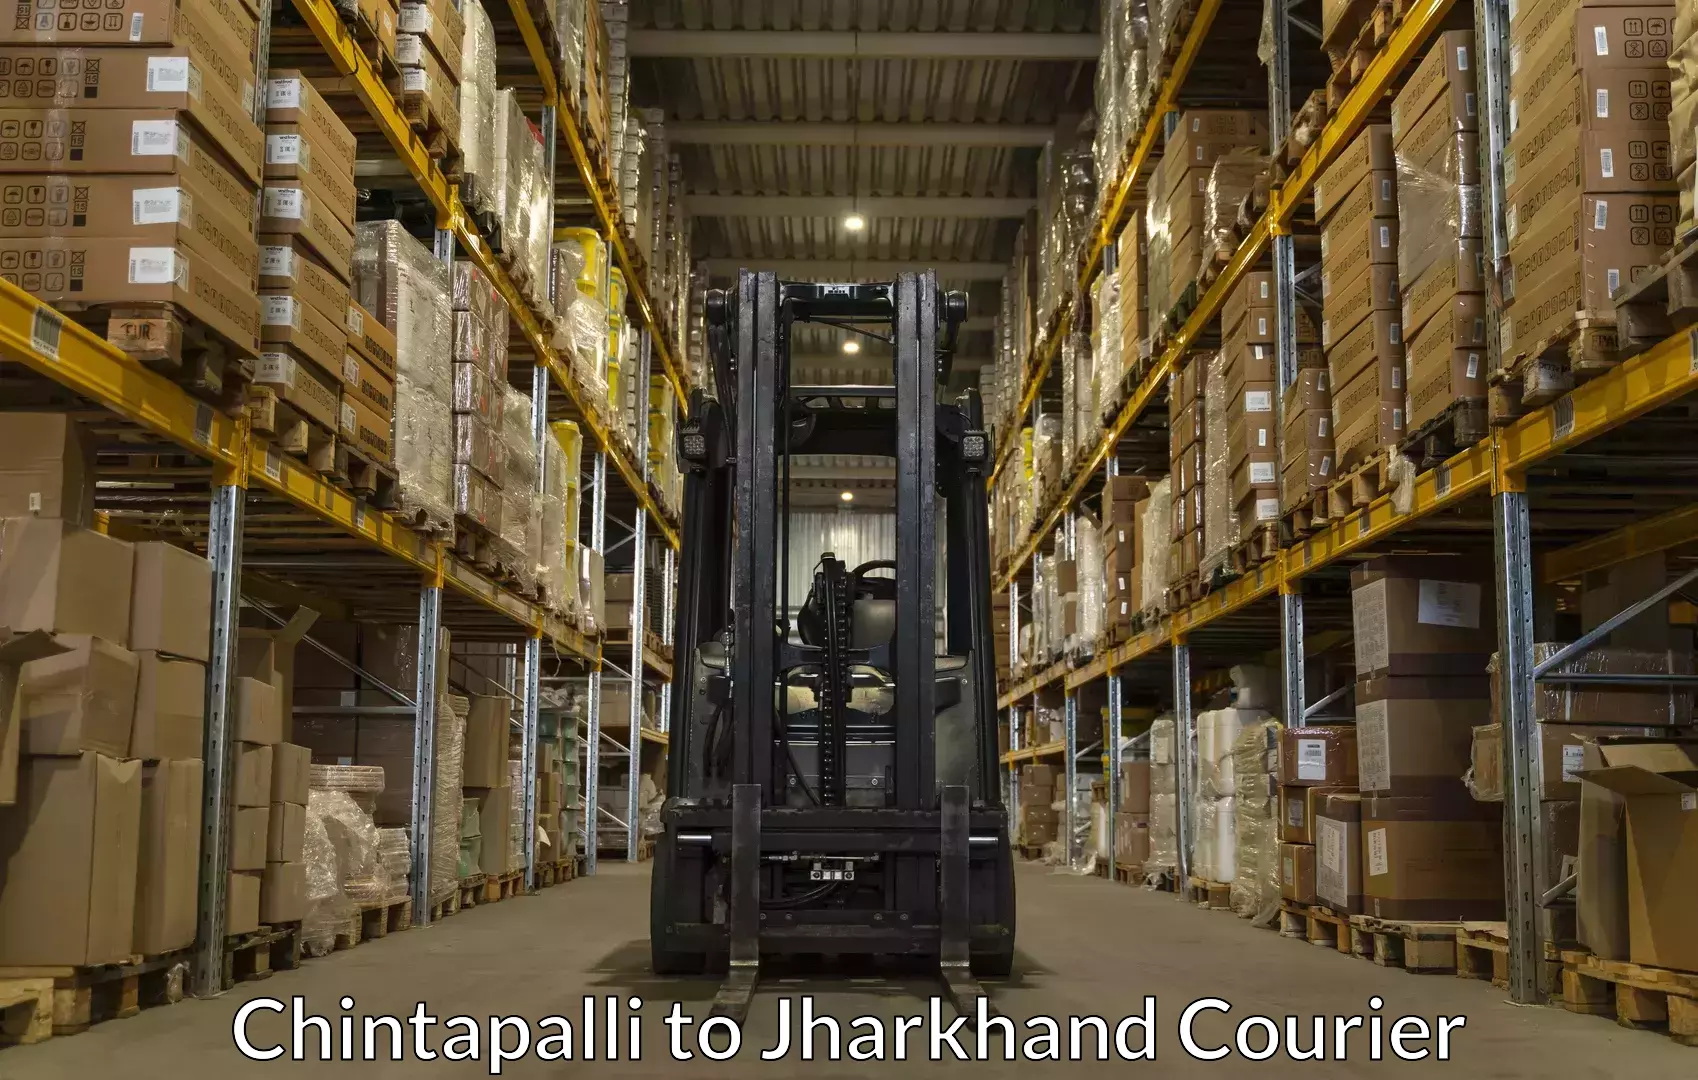 Expert goods movers Chintapalli to Palojori